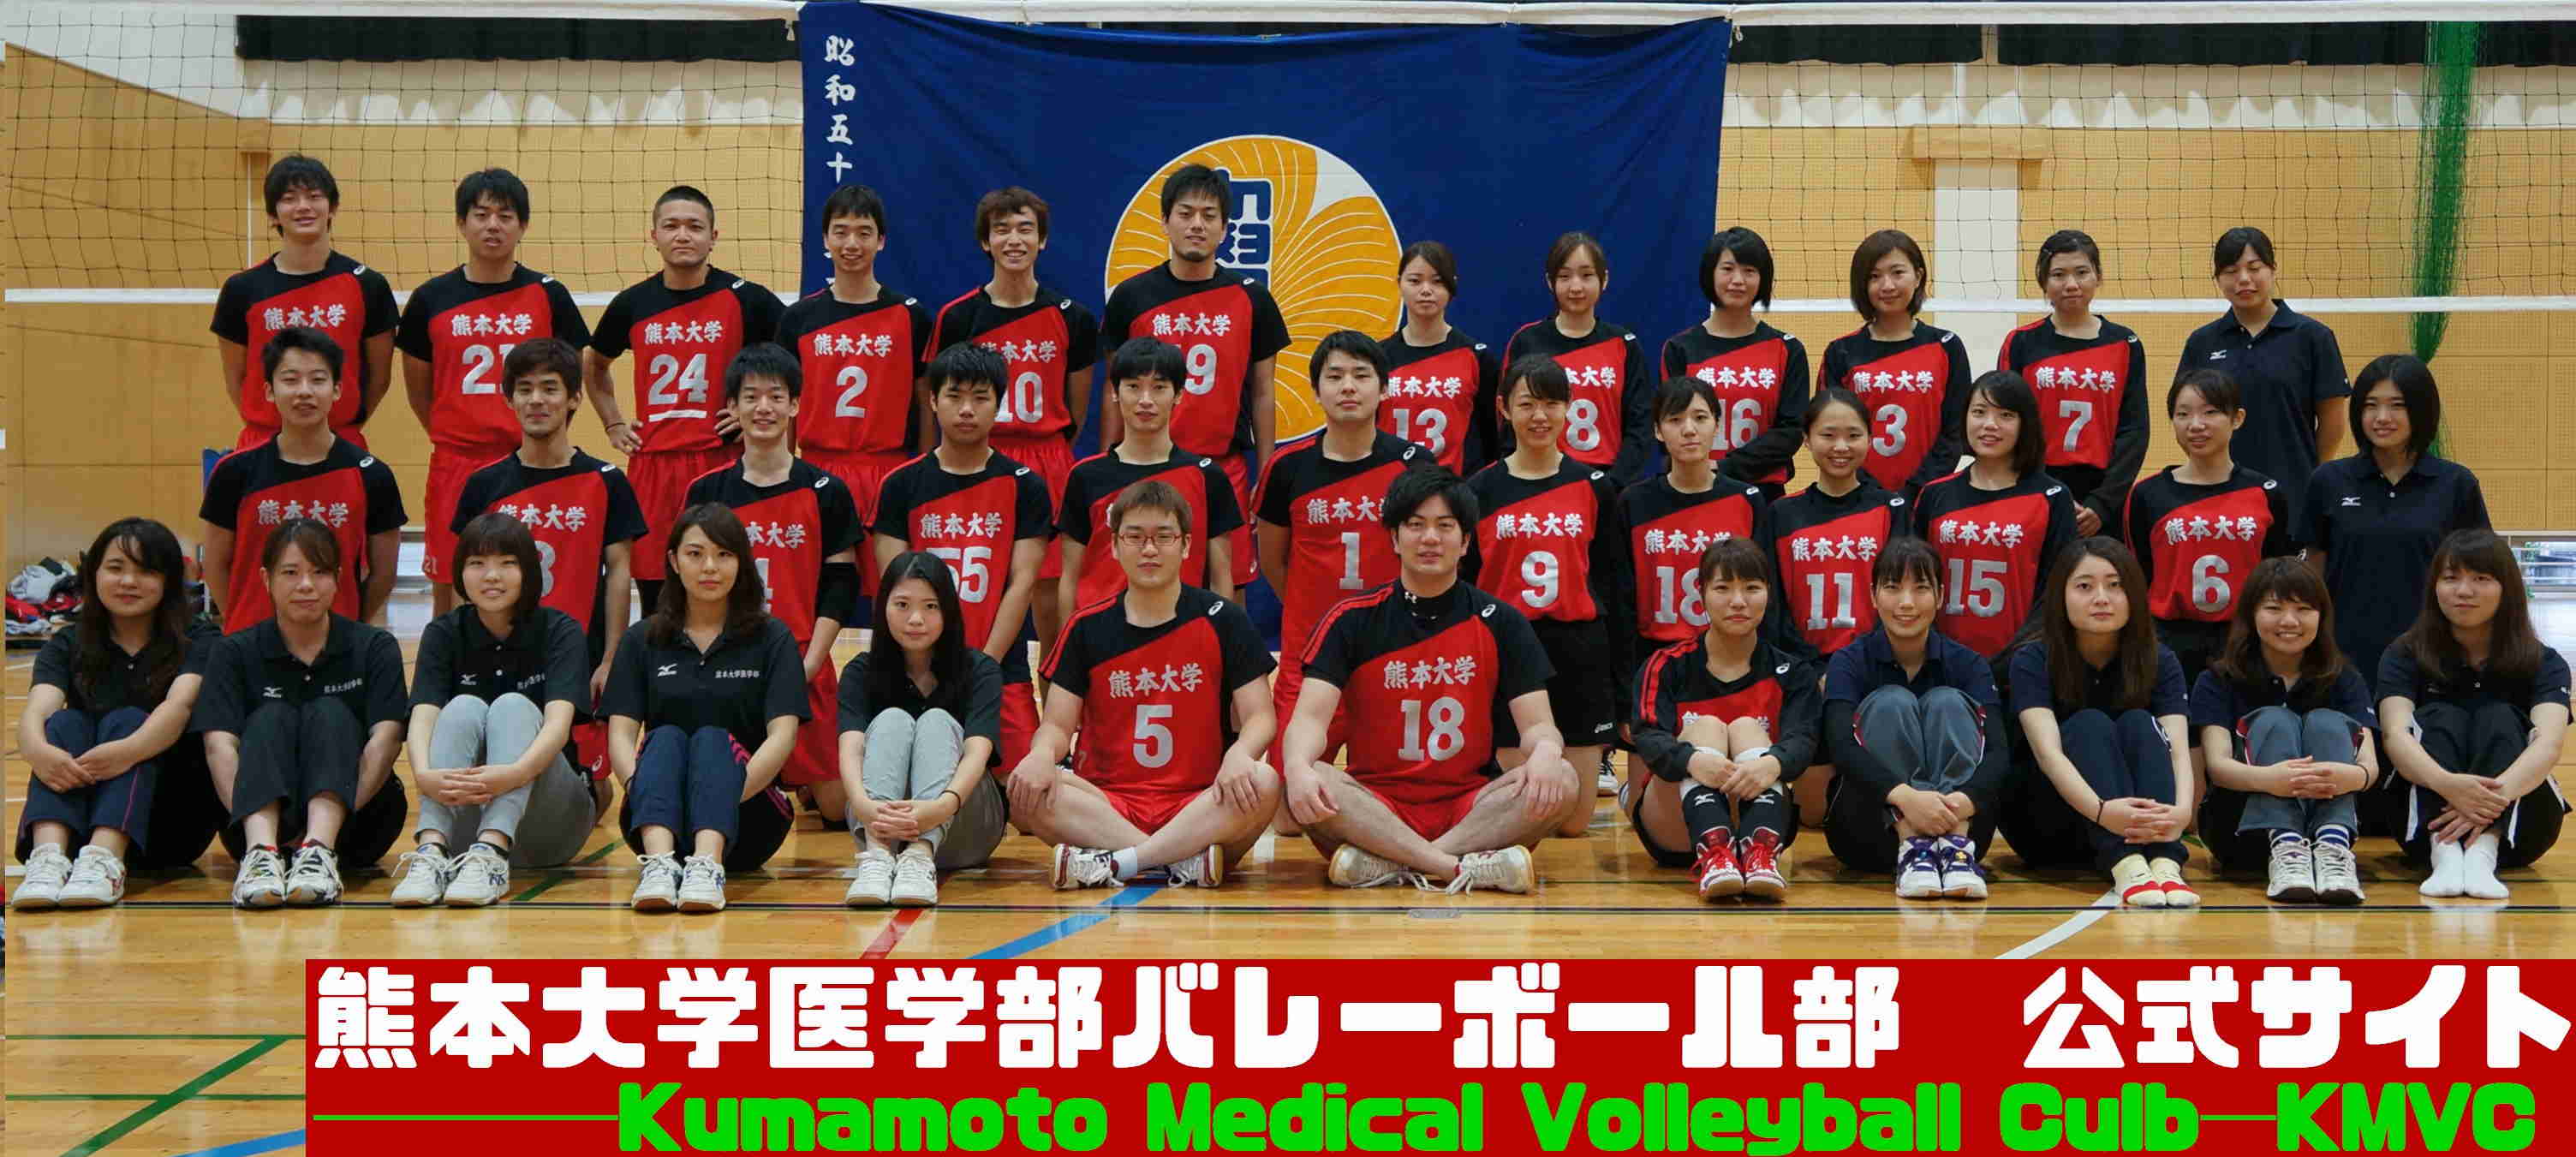 熊本大学医学部バレーボール部は、部員募集中です！